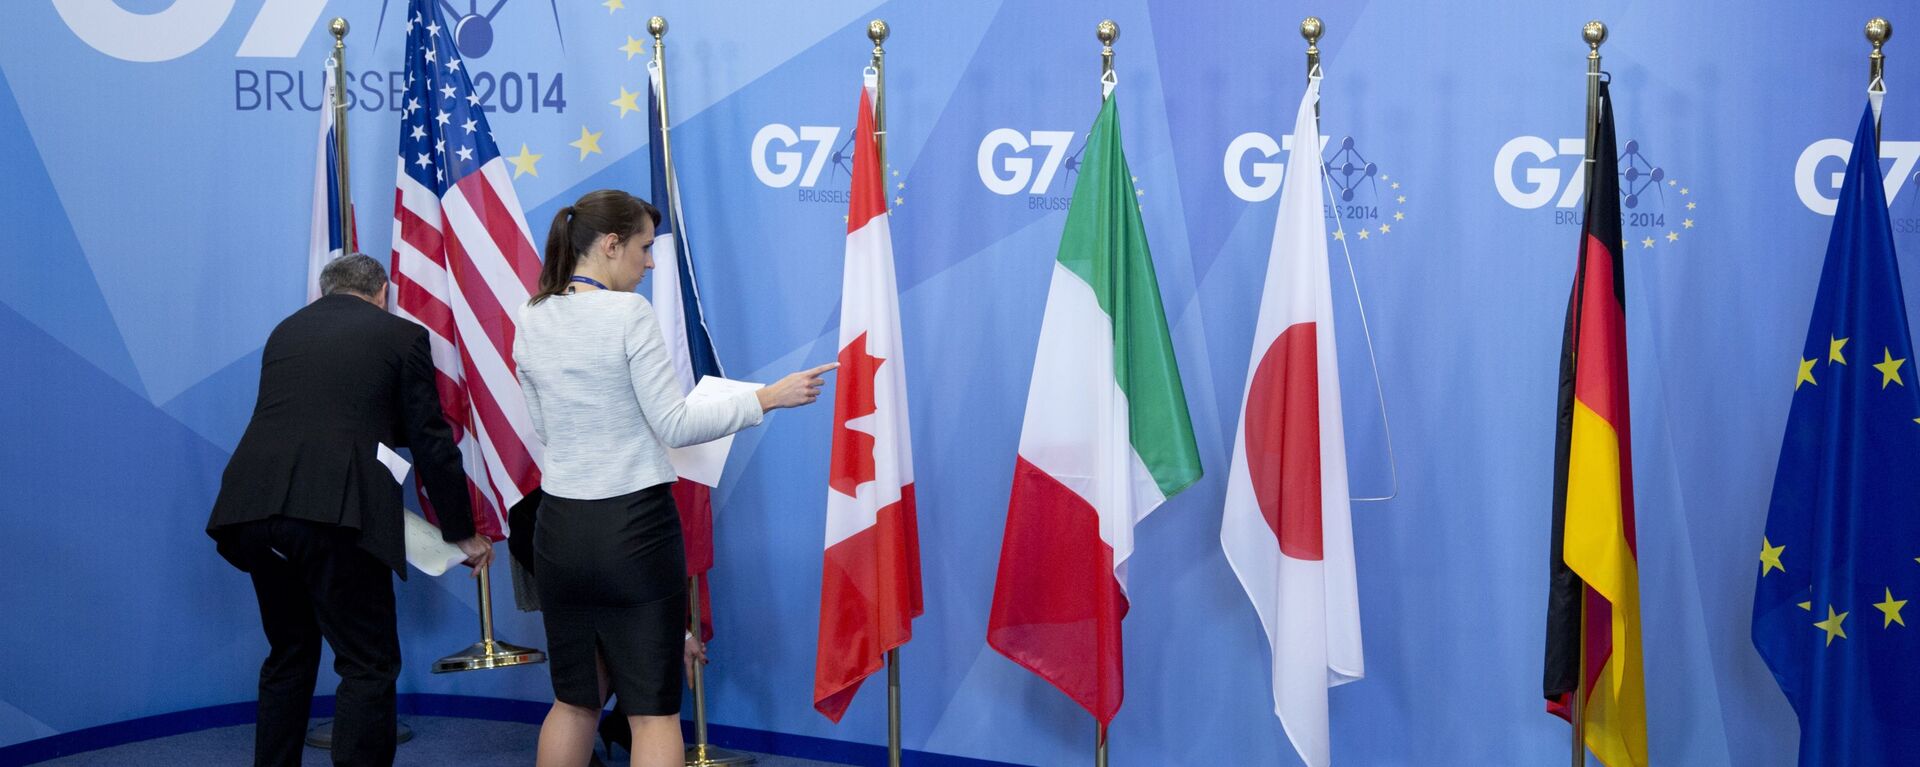 Quốc kỳ các nước G7 và EU tại hội nghị thượng đỉnh ở Brussels, Bỉ. - Sputnik Việt Nam, 1920, 28.02.2022